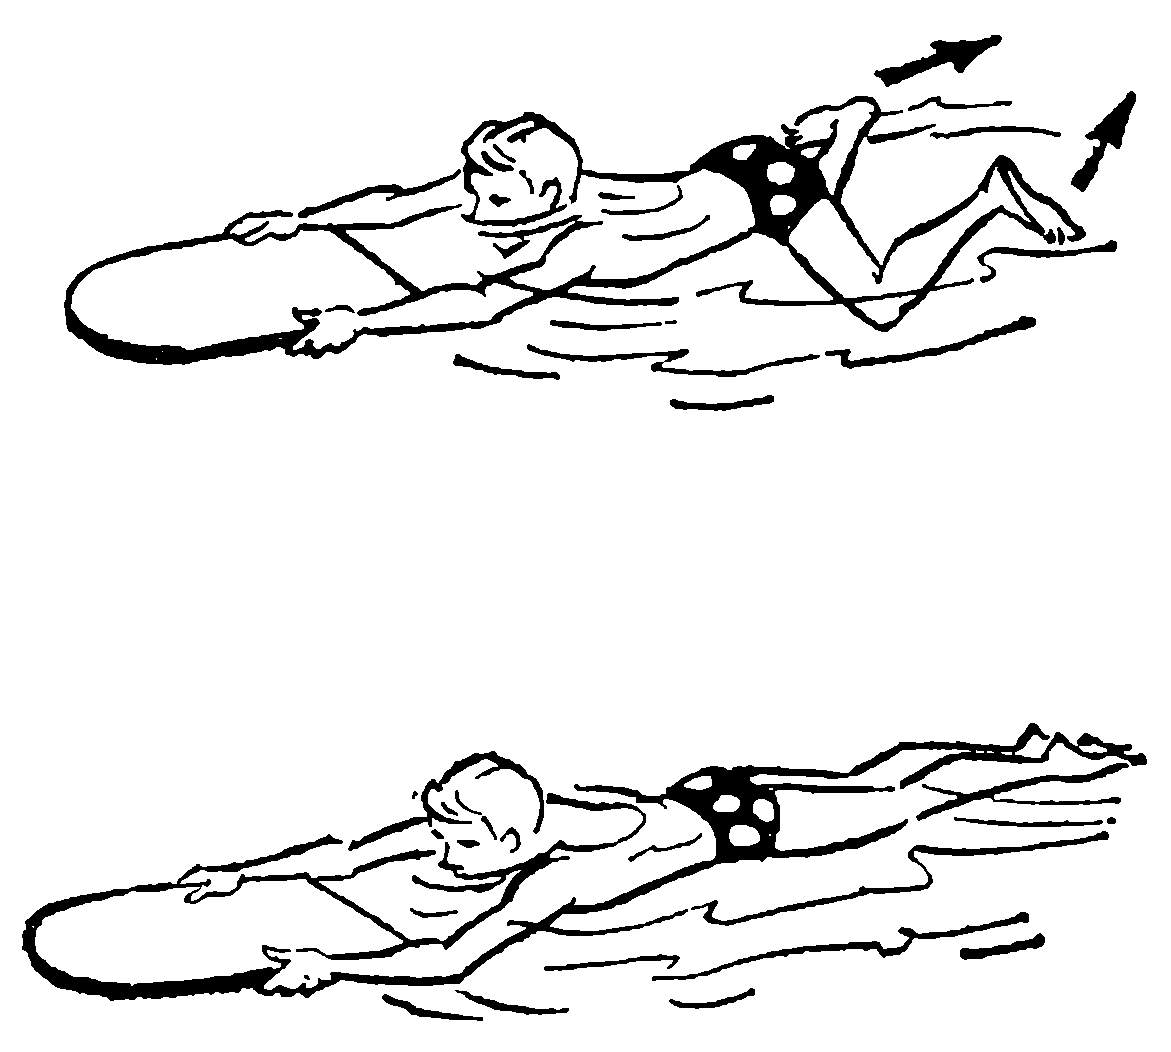 Пошаговая инструкция плавания брассом с пользой, возможные ошибки при обучении